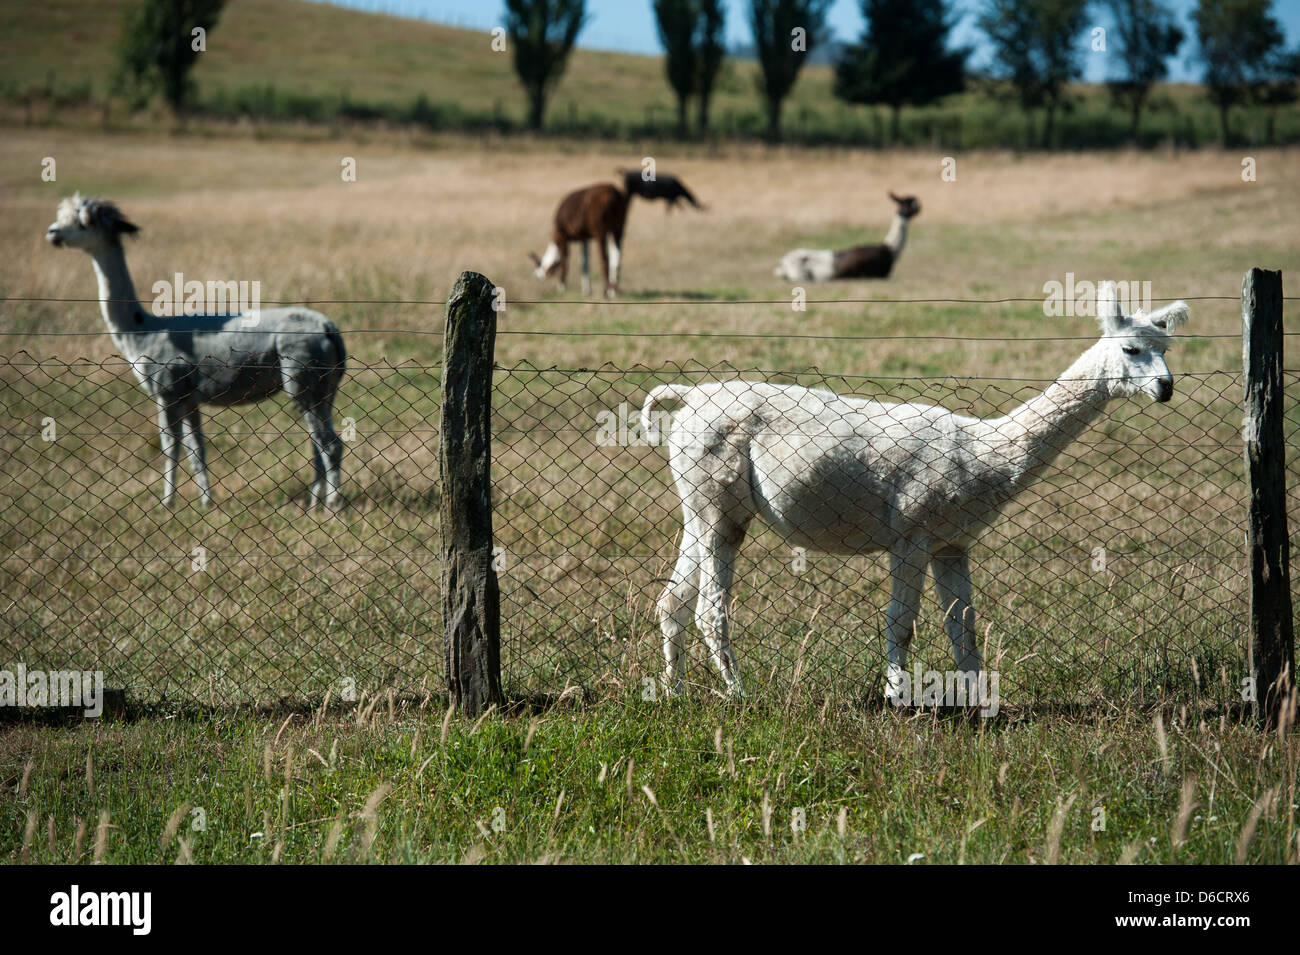 Ferme d'élevage de lamas et alpagas situé à environ 30 km à l'est de Temuco au Chili Banque D'Images